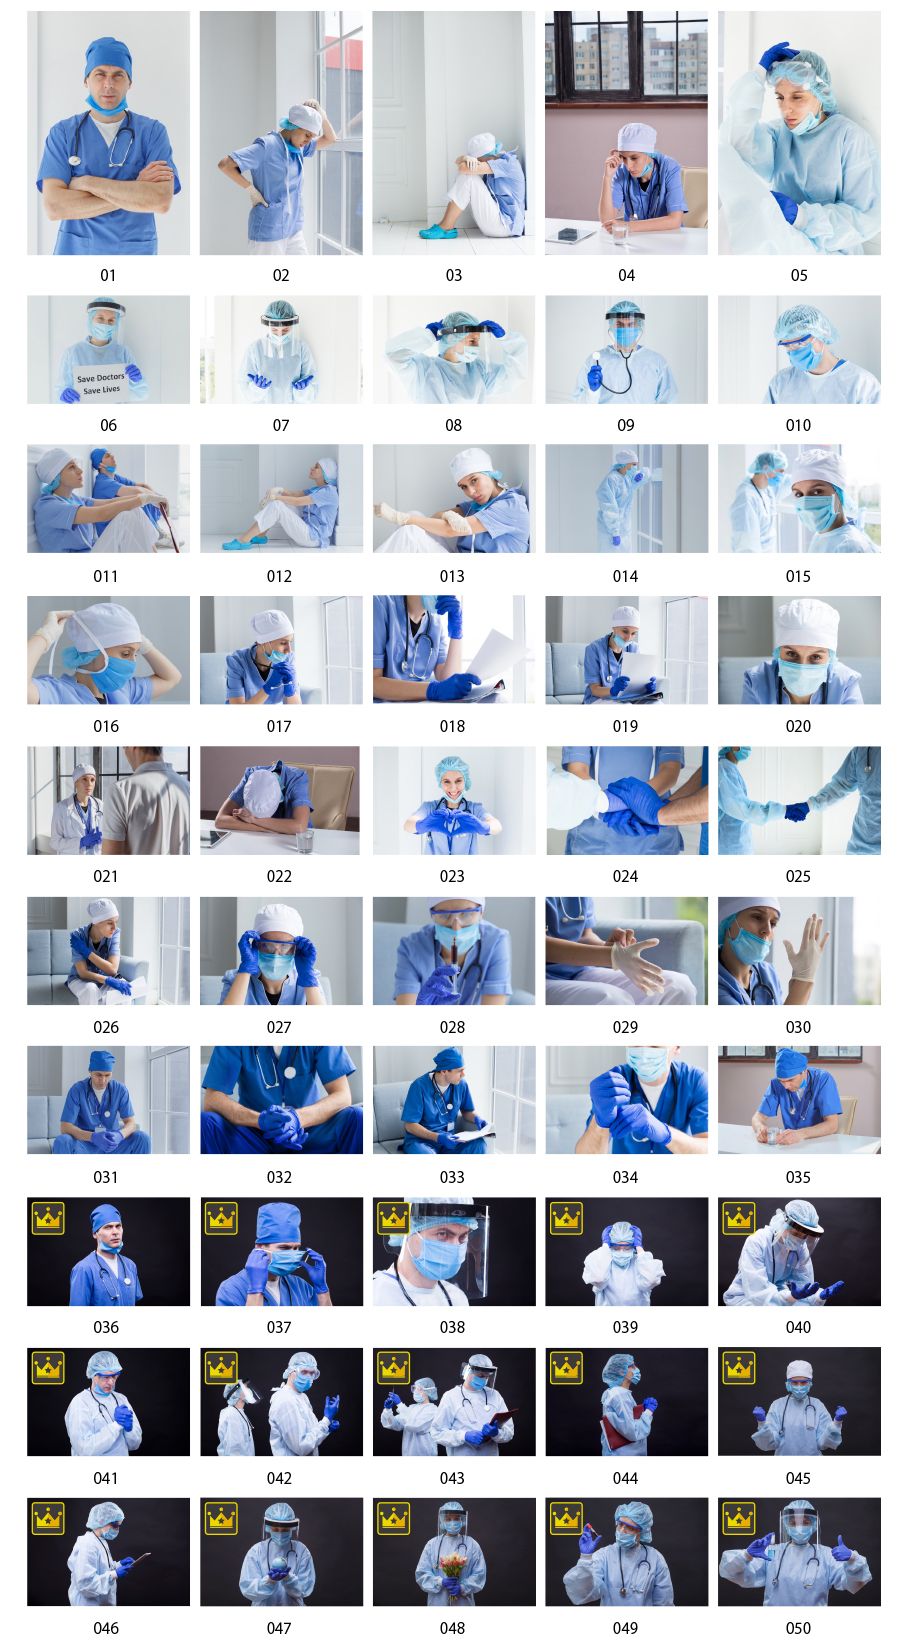 Doctor photos